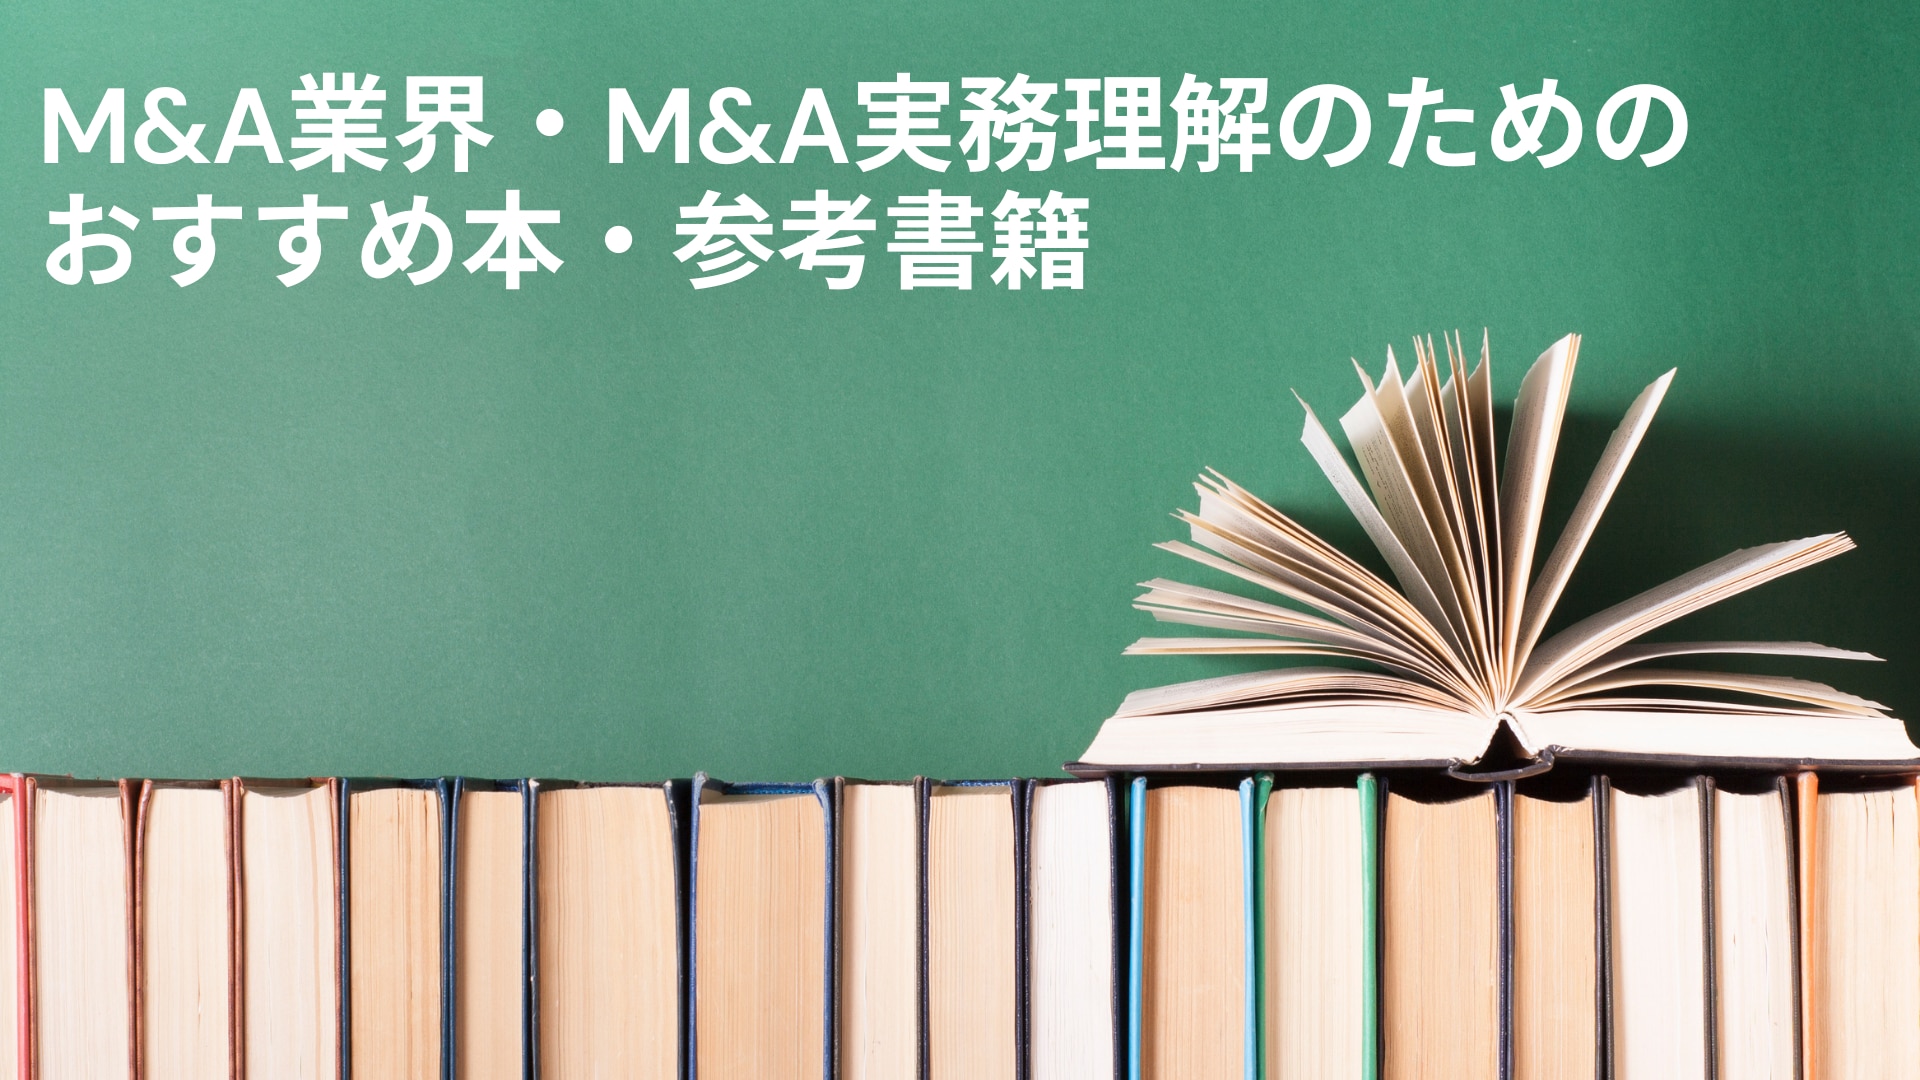 2022年更新】【M&A | 本・書籍】M&A関連のおすすめ本・書籍一覧 | M&A 